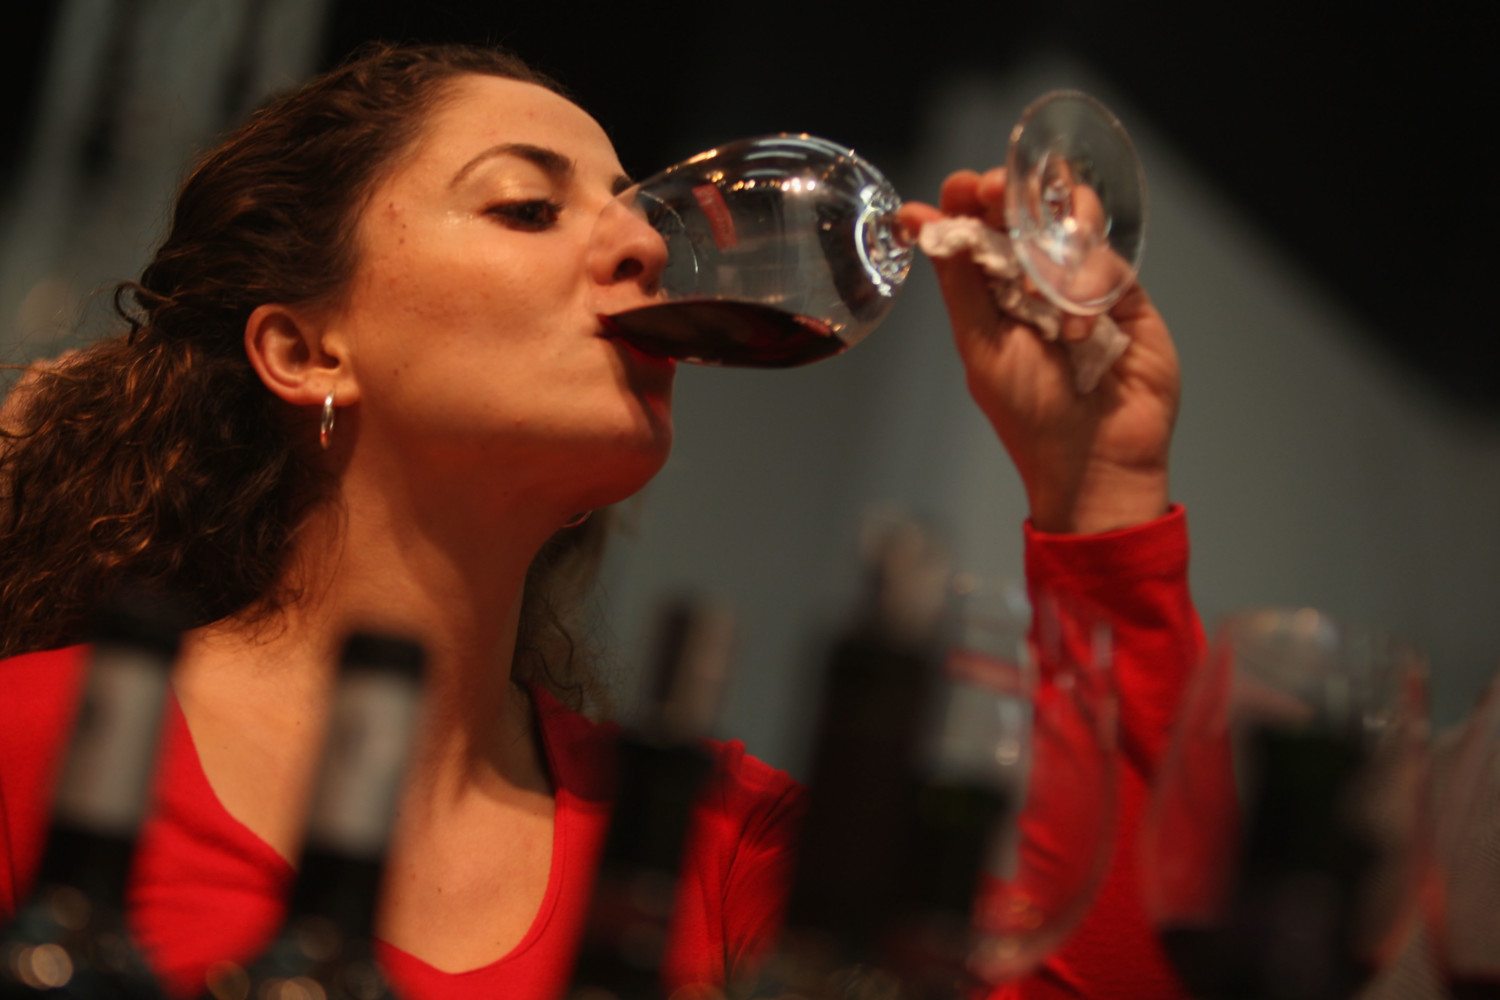 International Wine Fair Held In Tel Aviv